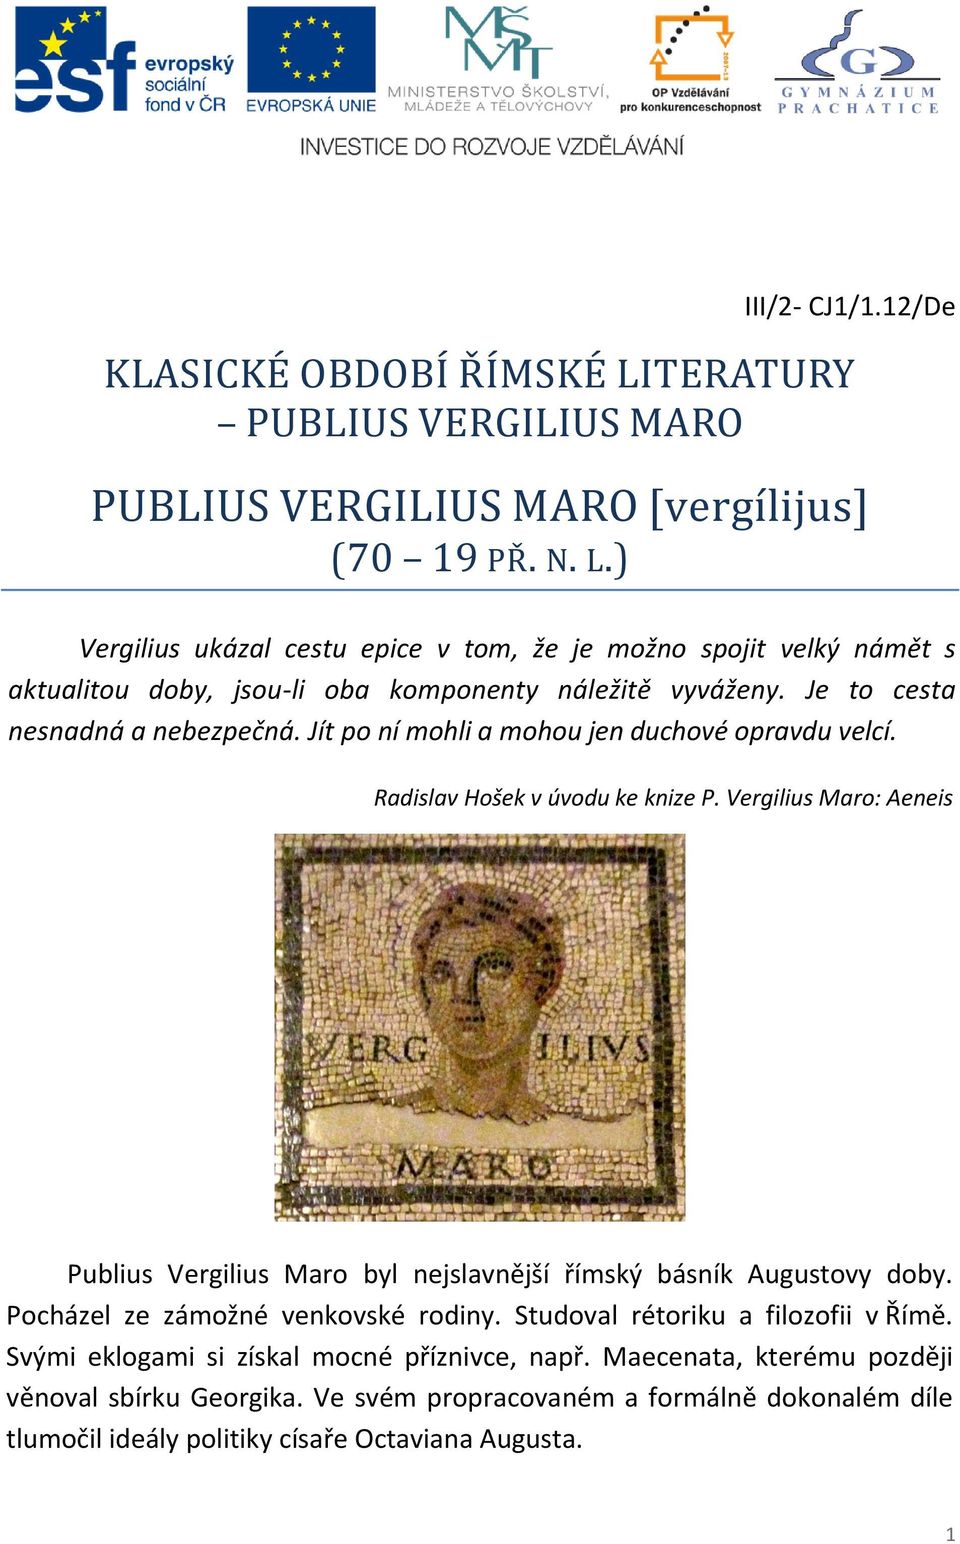 Vergilius Maro: Aeneis Publius Vergilius Maro byl nejslavnější římský básník Augustovy doby. Pocházel ze zámožné venkovské rodiny. Studoval rétoriku a filozofii v Římě.